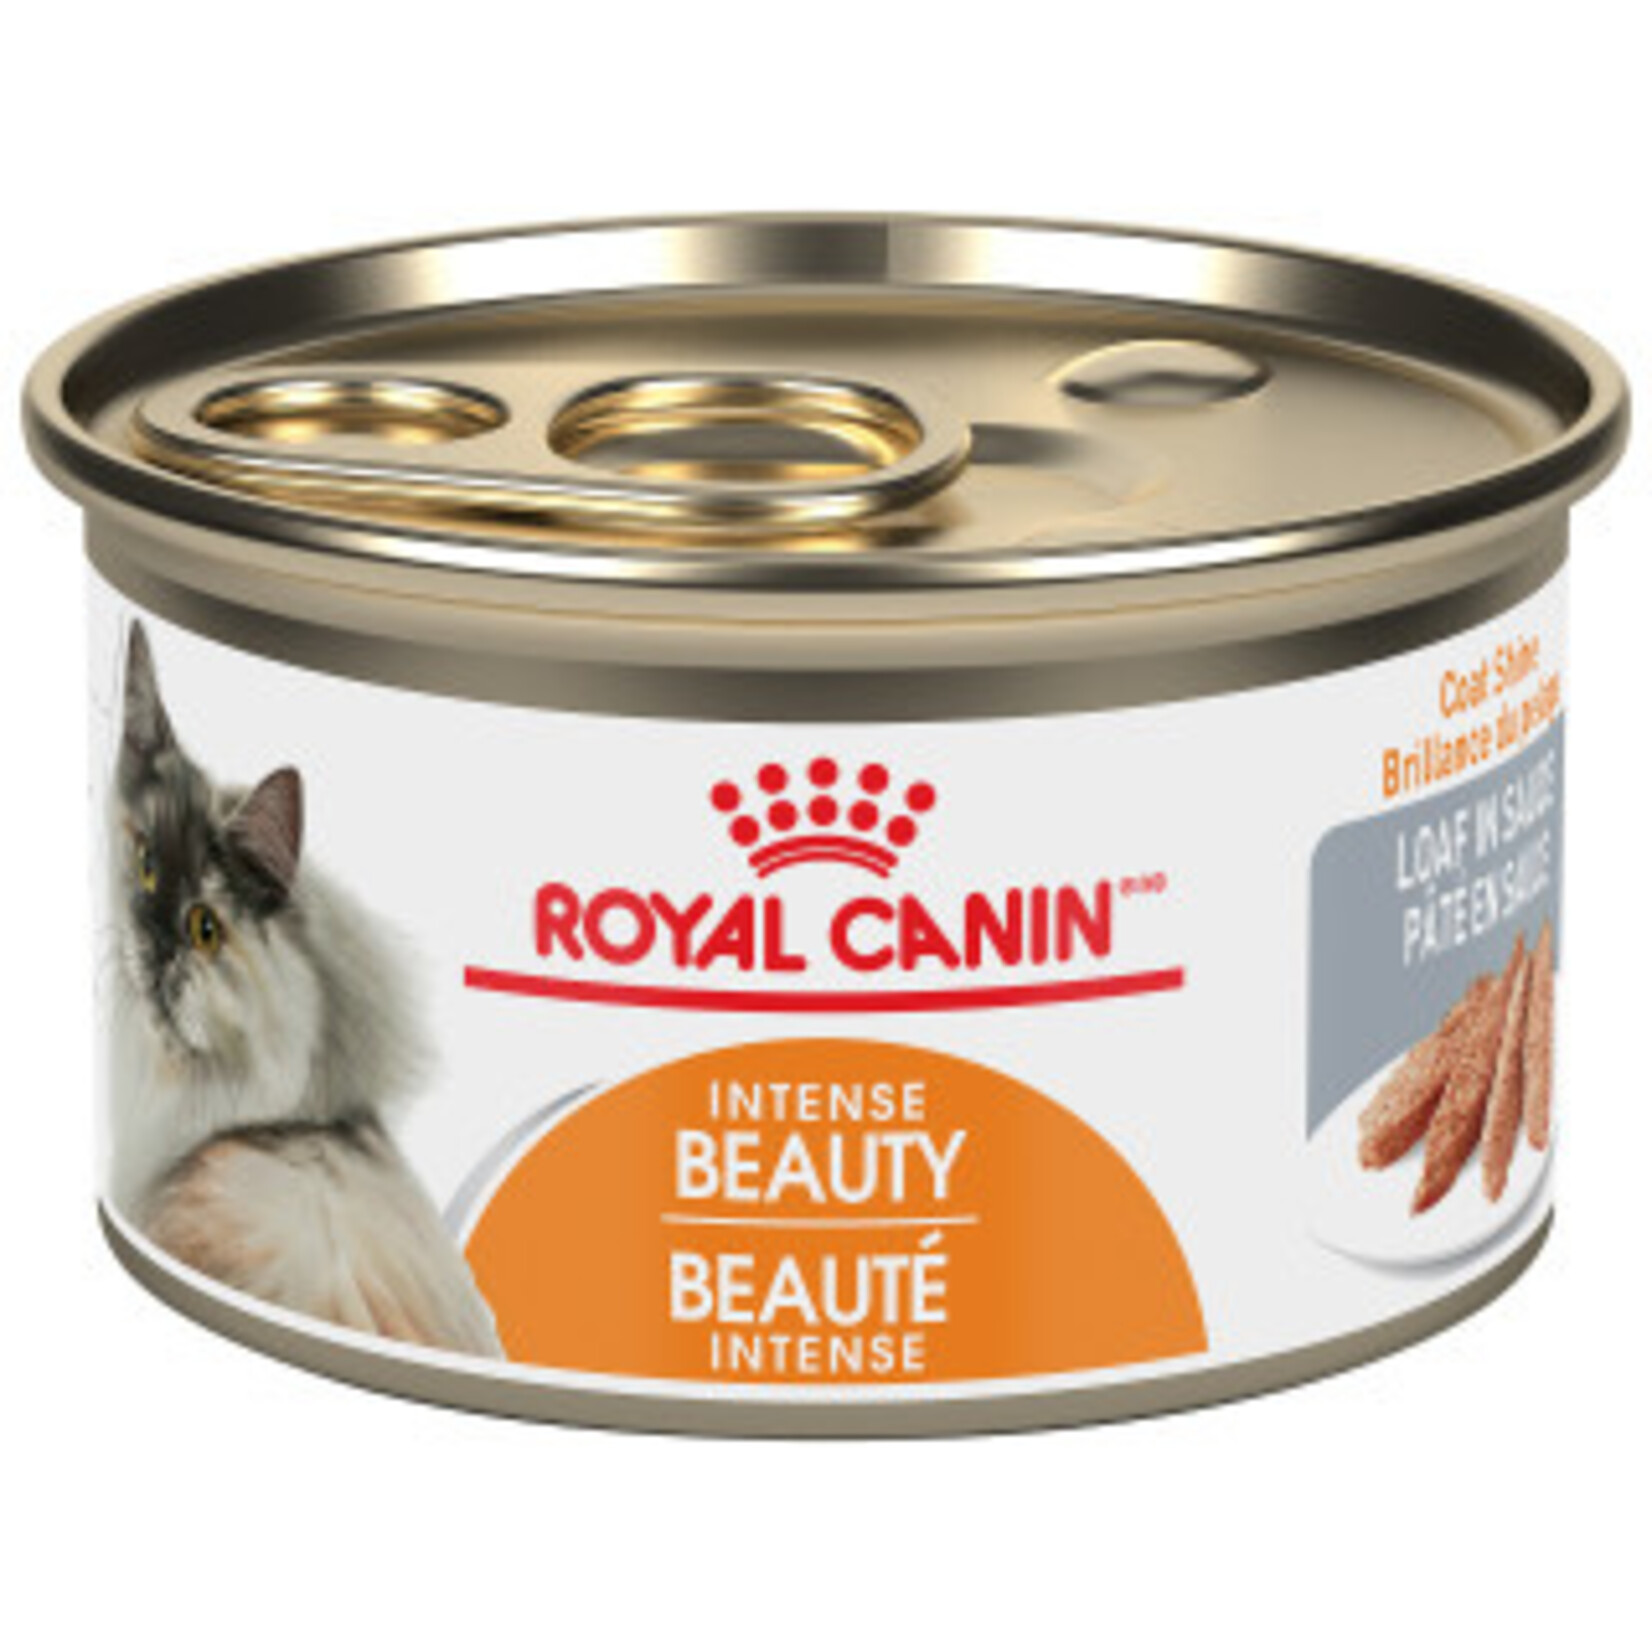 Royal Canin Royal Canin Chat Canne Pâté En Sauce Beauté Intense 3oz/85g